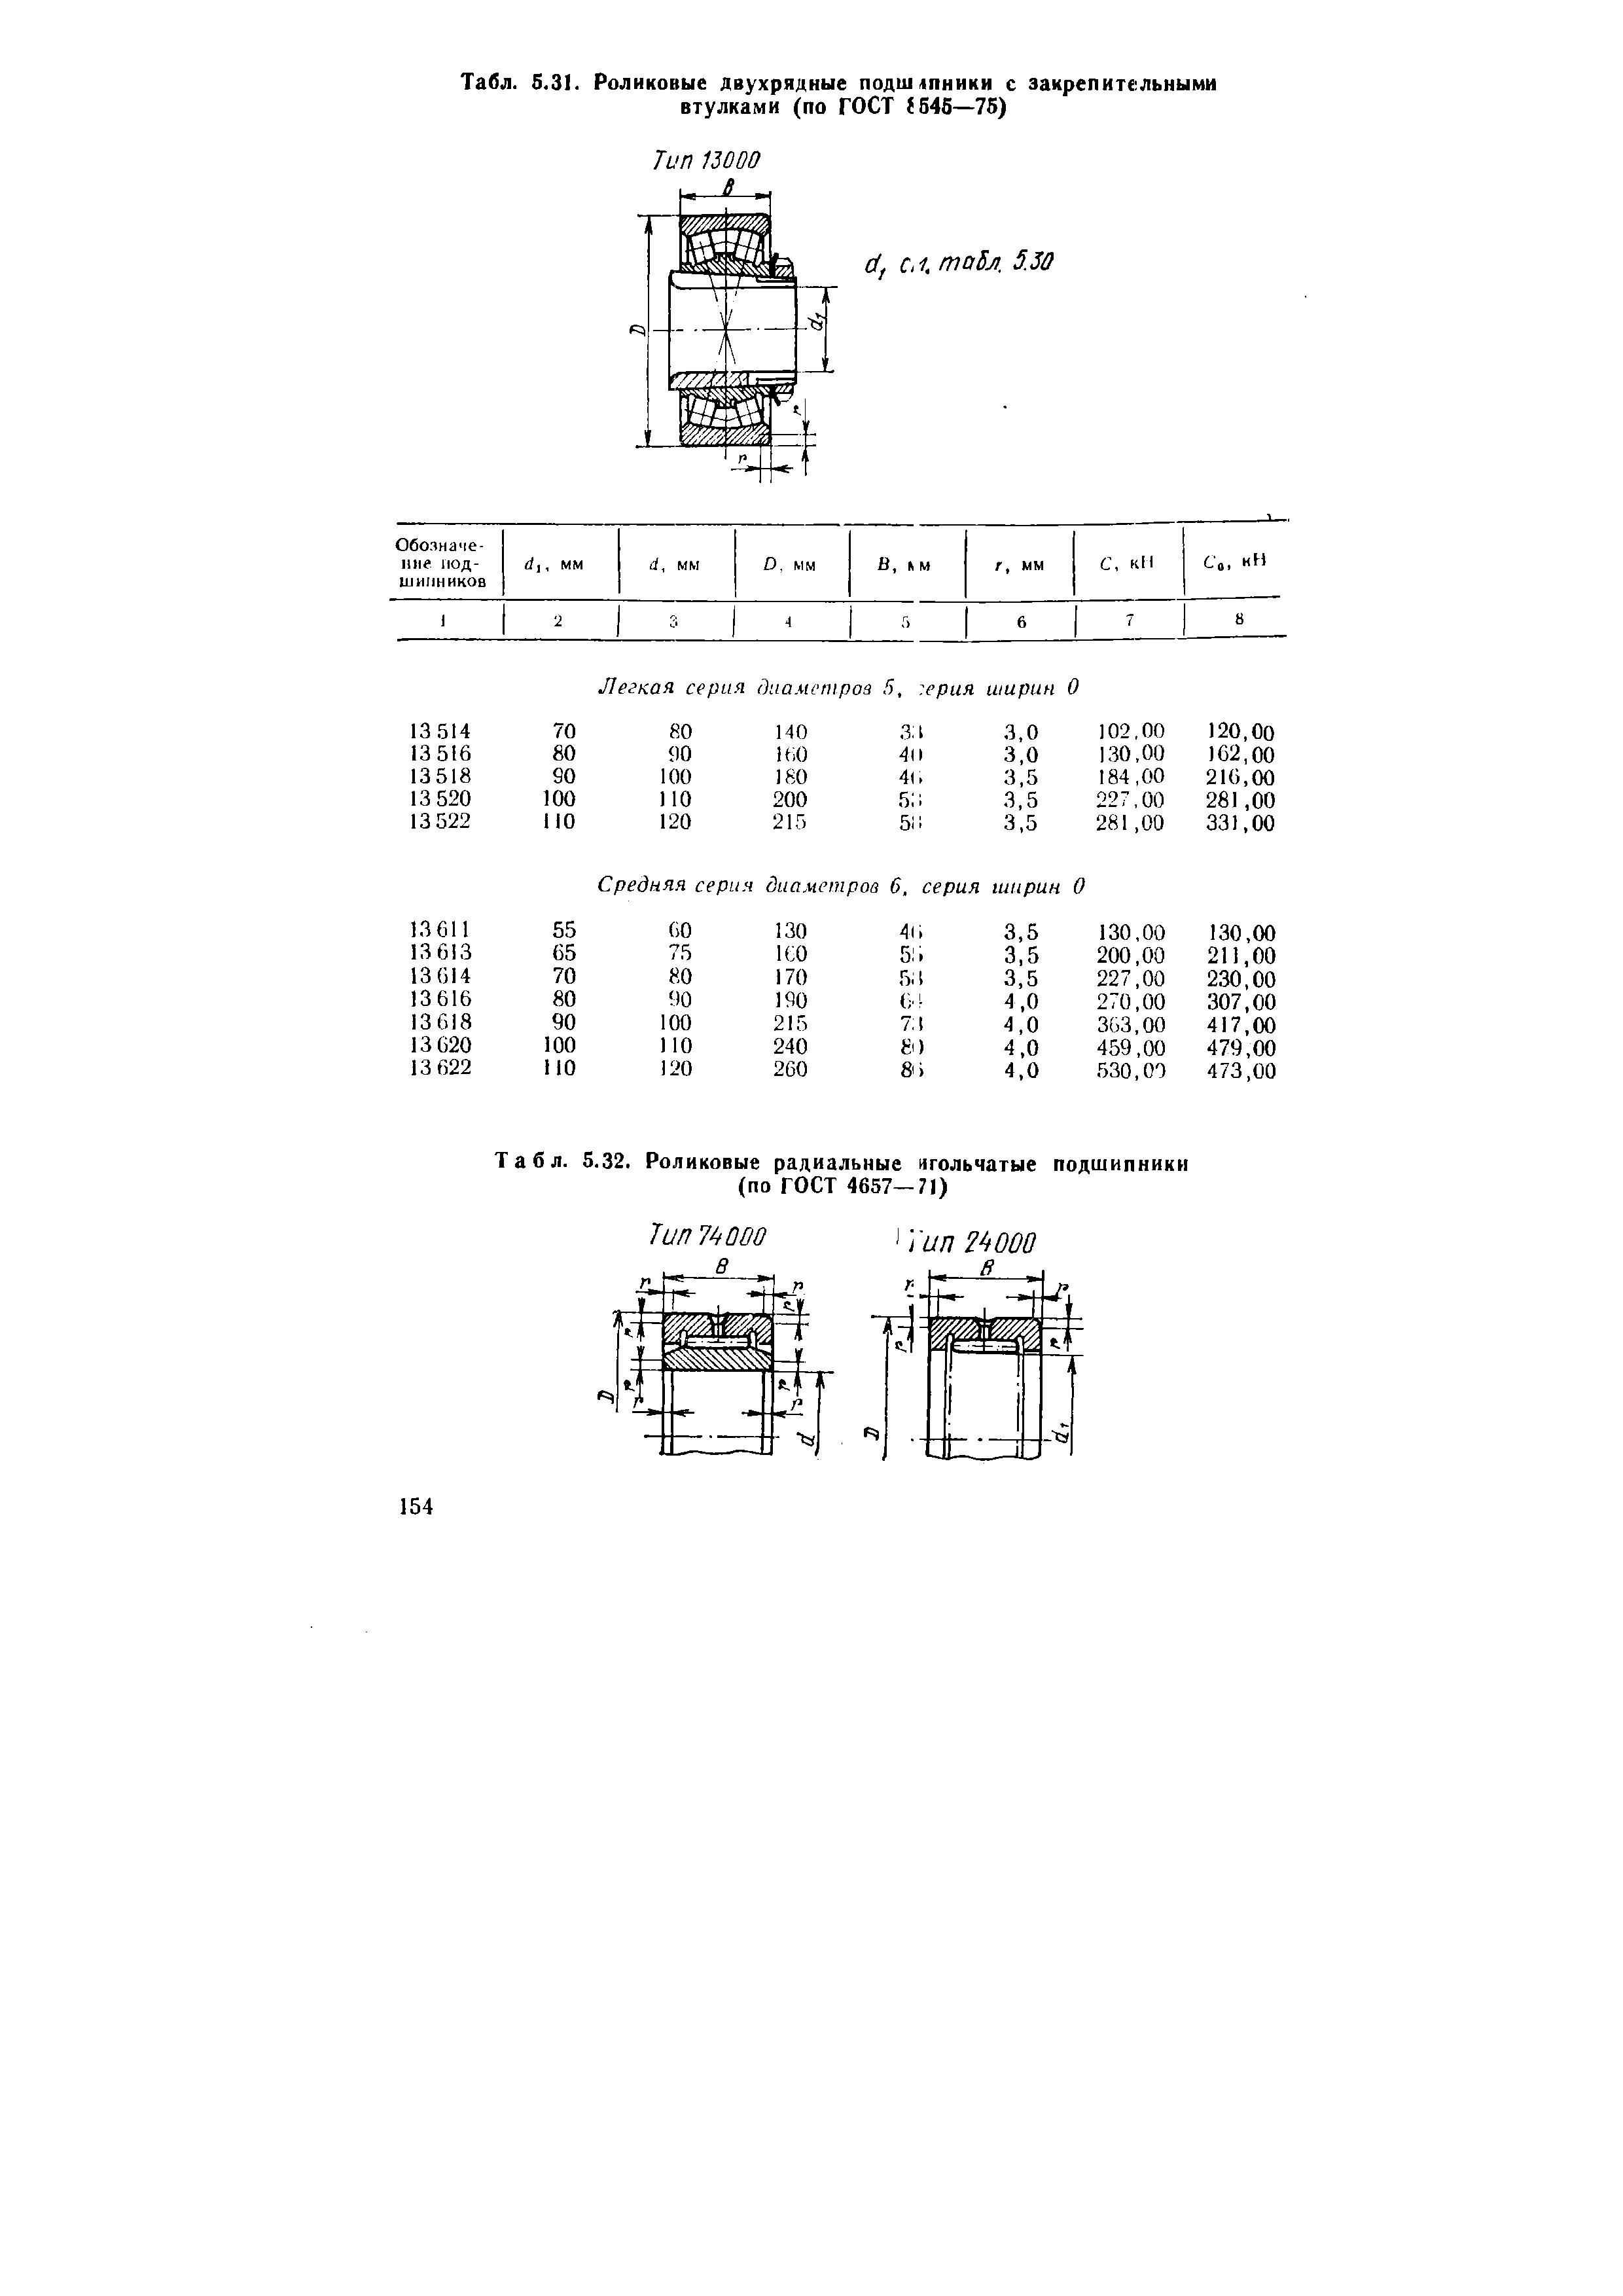 Табл. 5.32. Роликовые радиальные игольчатые подшипники (по ГОСТ 4657—71)
